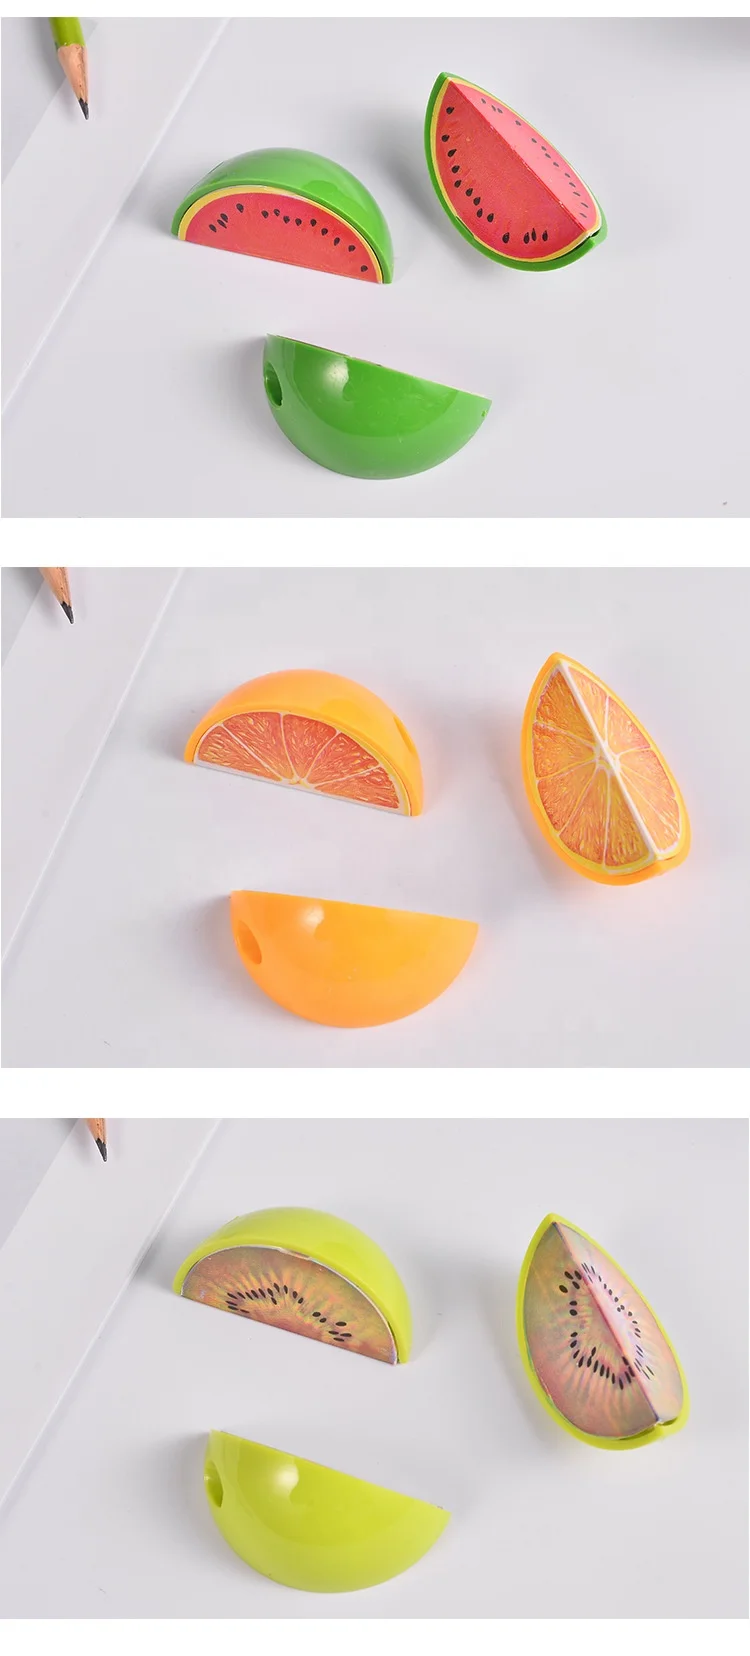 Wholesale creative cute 3D fruit shape plastic kids pencil sharpener